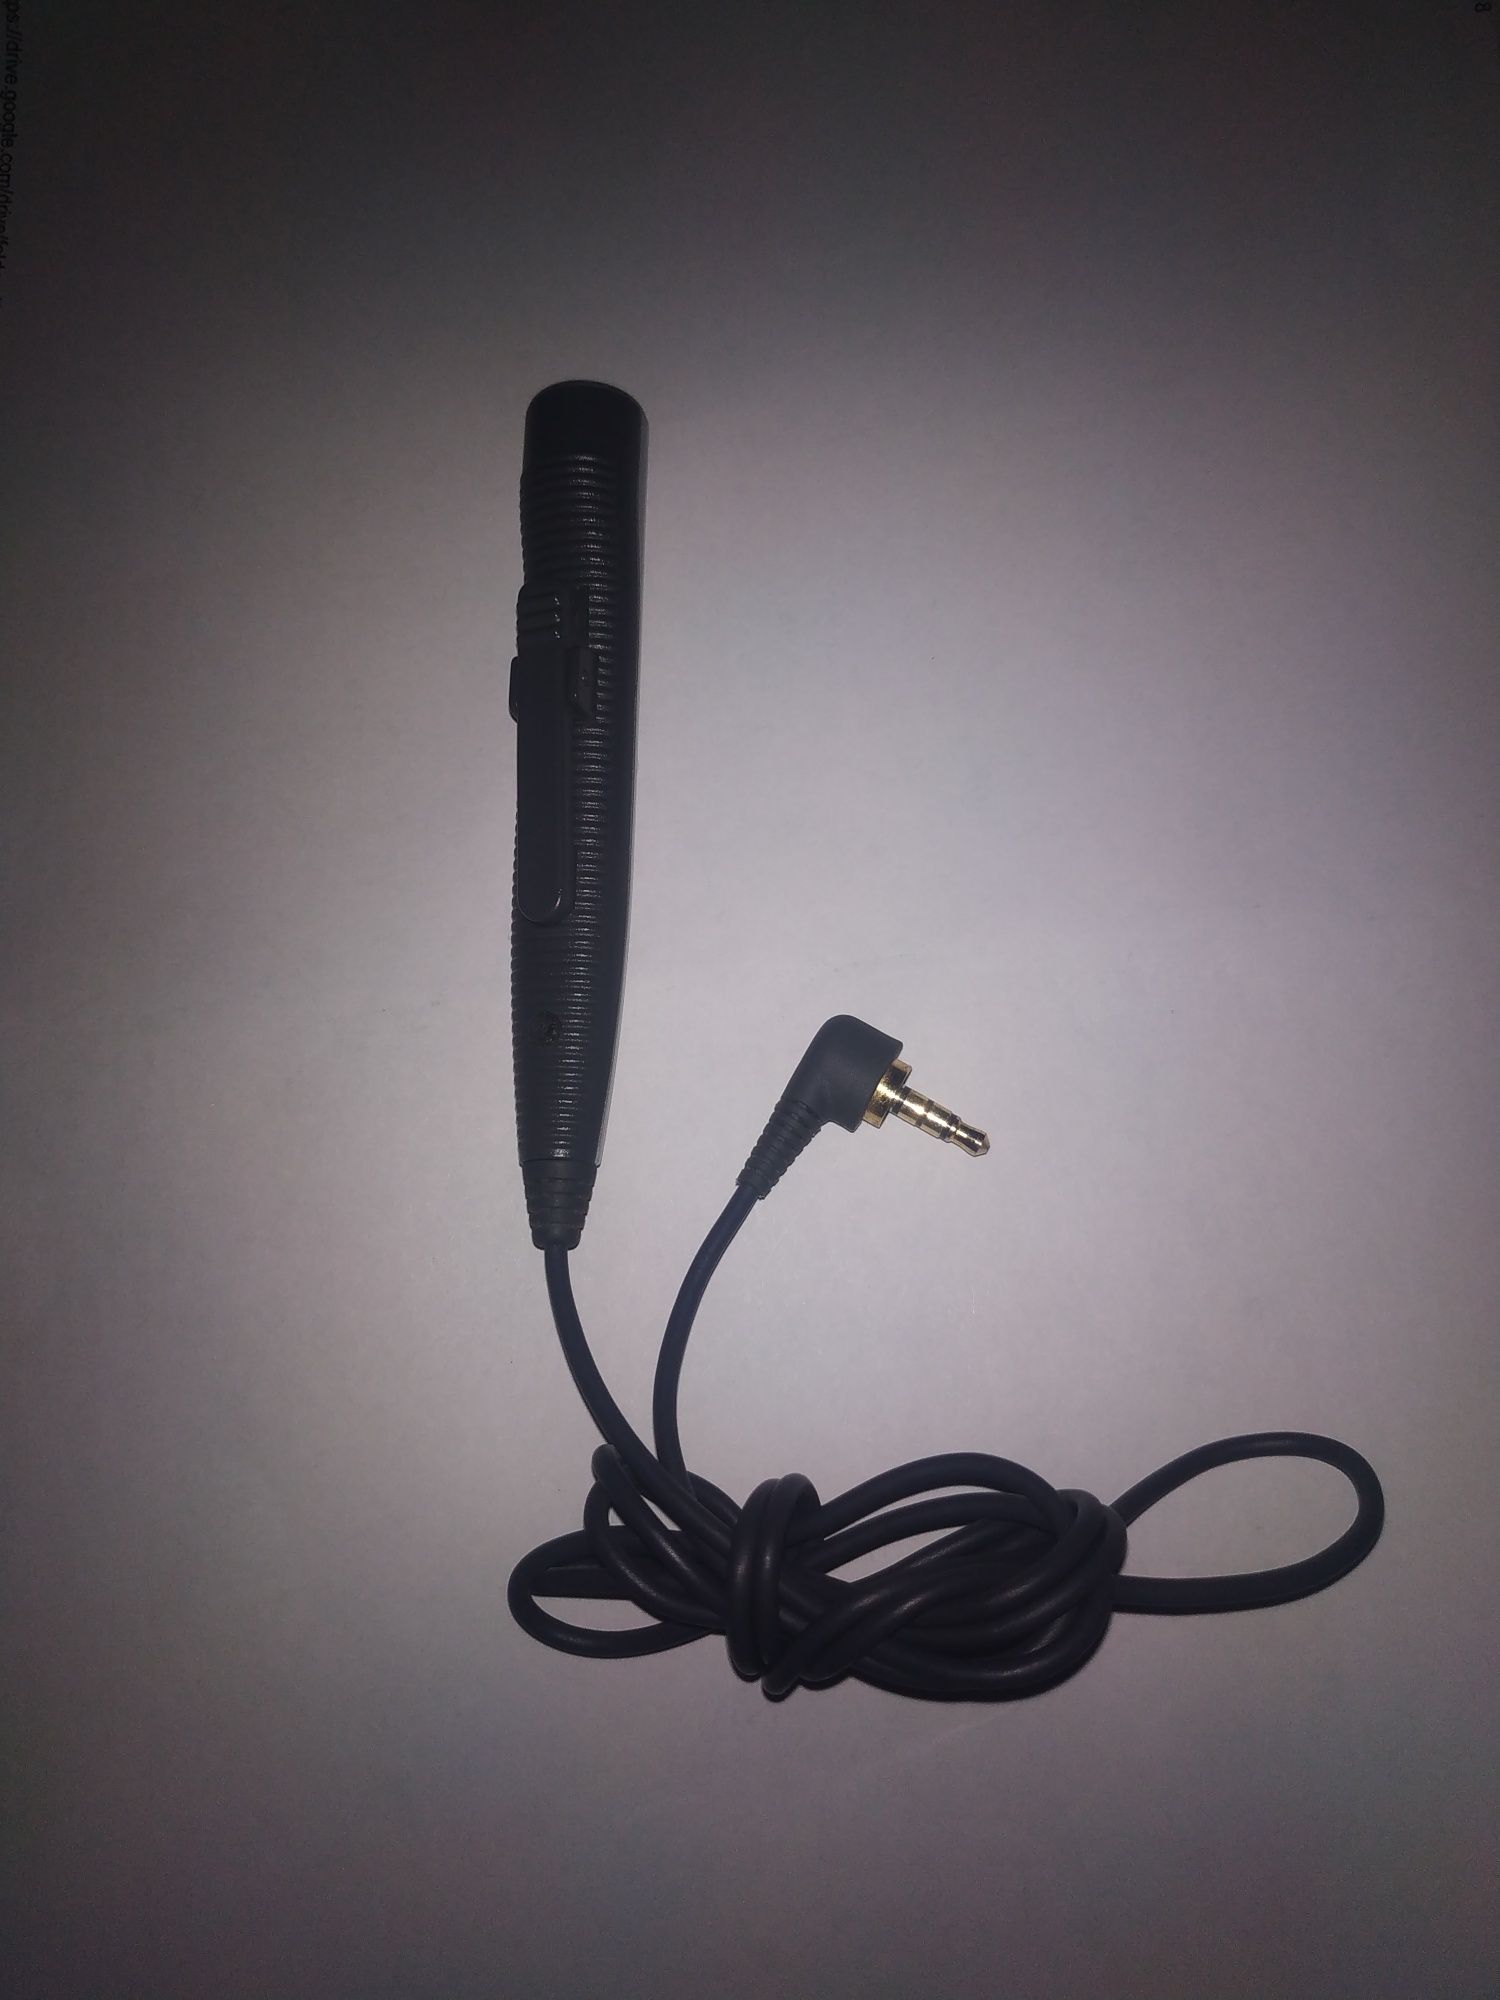 Panasonic Remote с 3,5 мм разъемом для микрофона